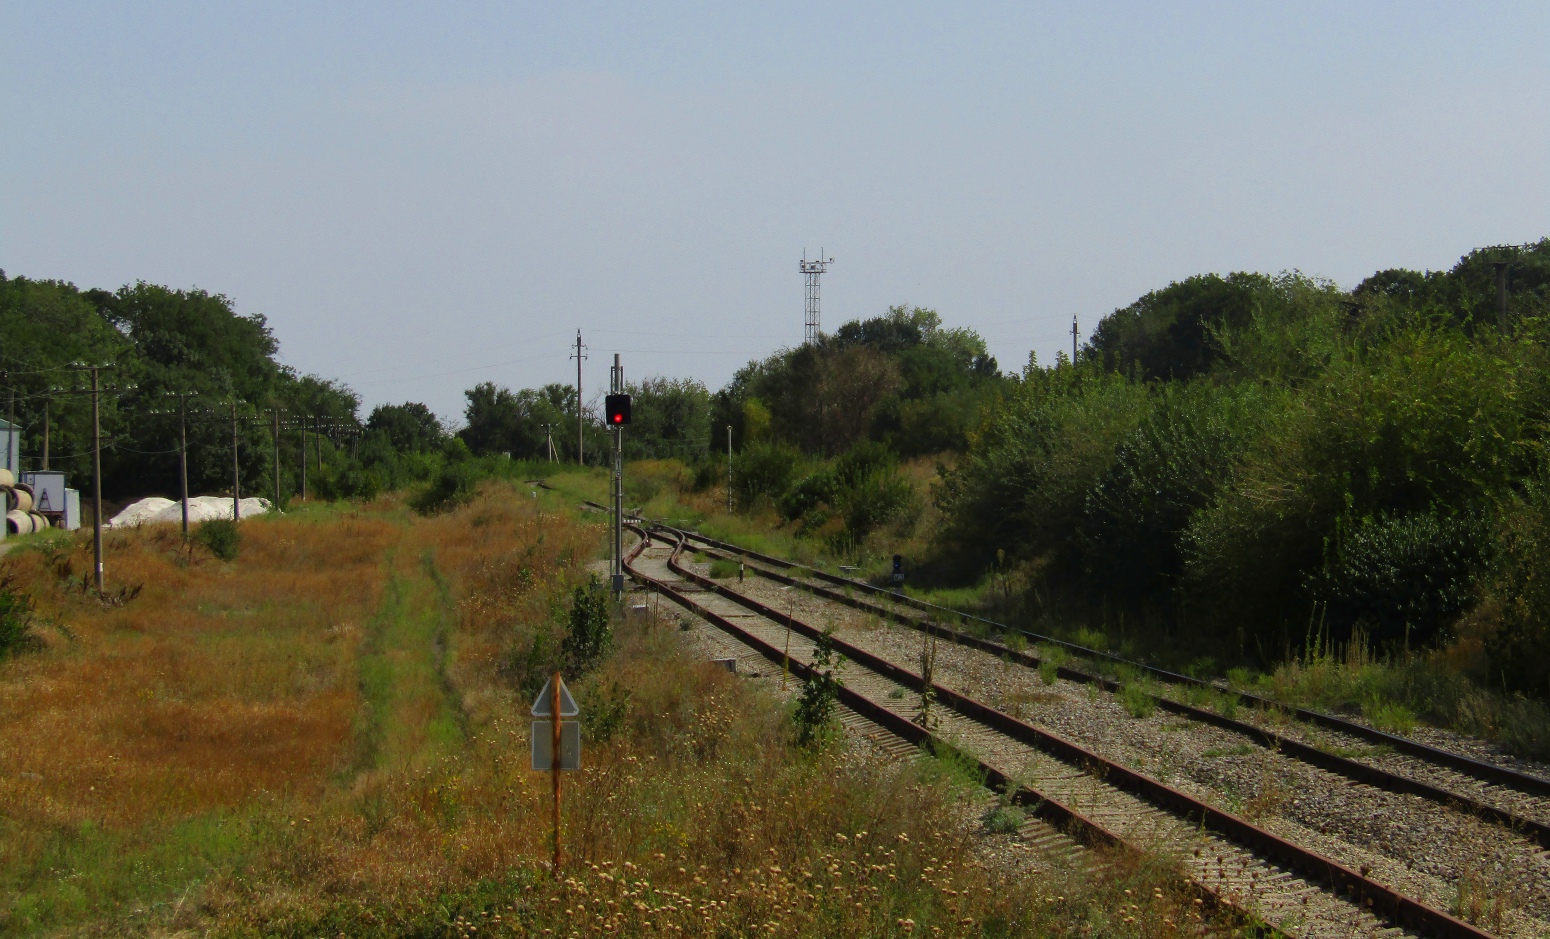 North Caucasus Railway — Miscellaneous Photos; North Caucasus Railway — Station and Hauls